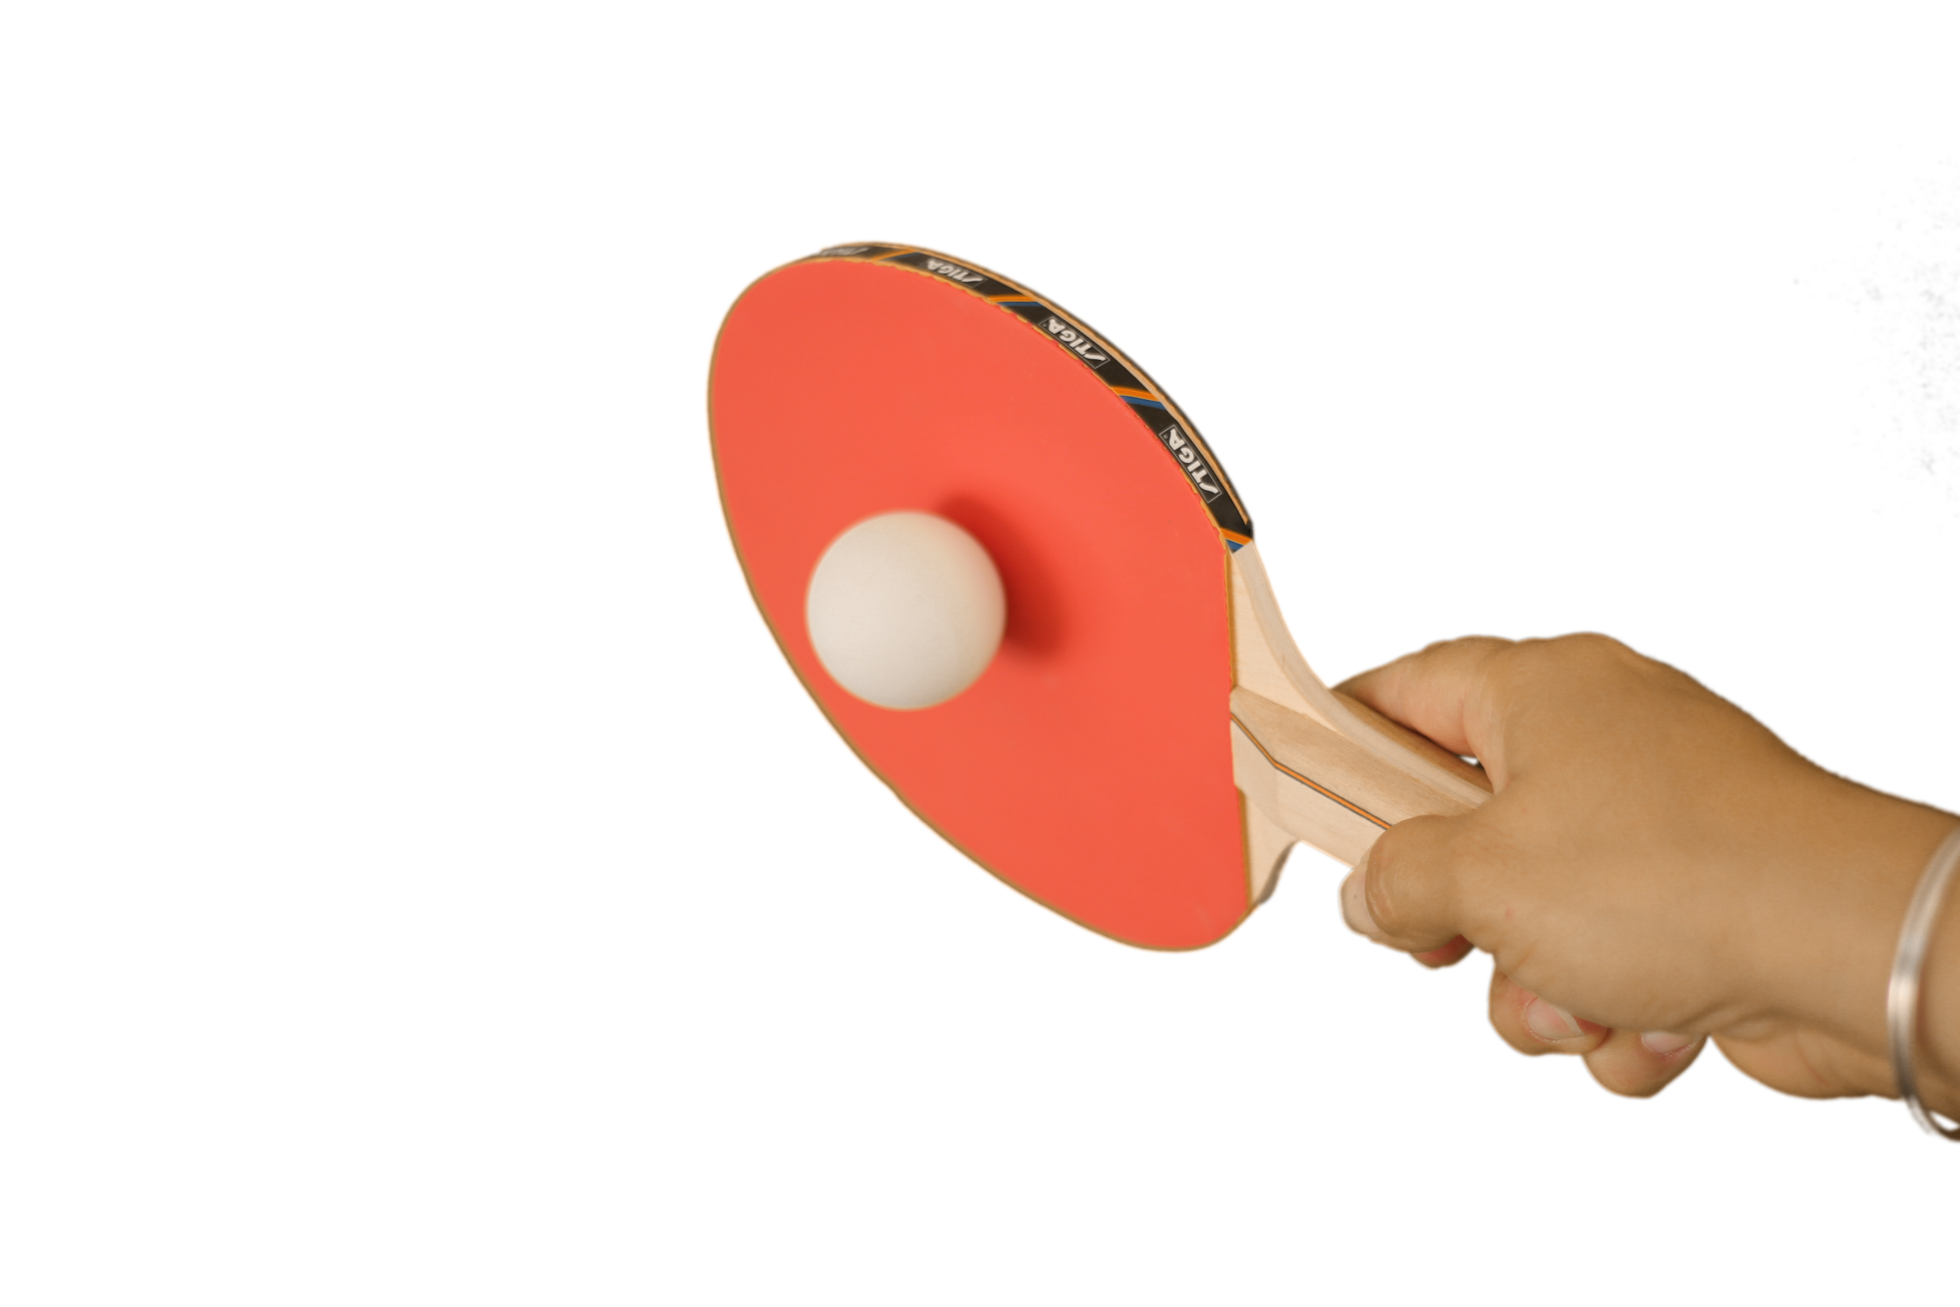 Raquete de tênis de mesa na mão